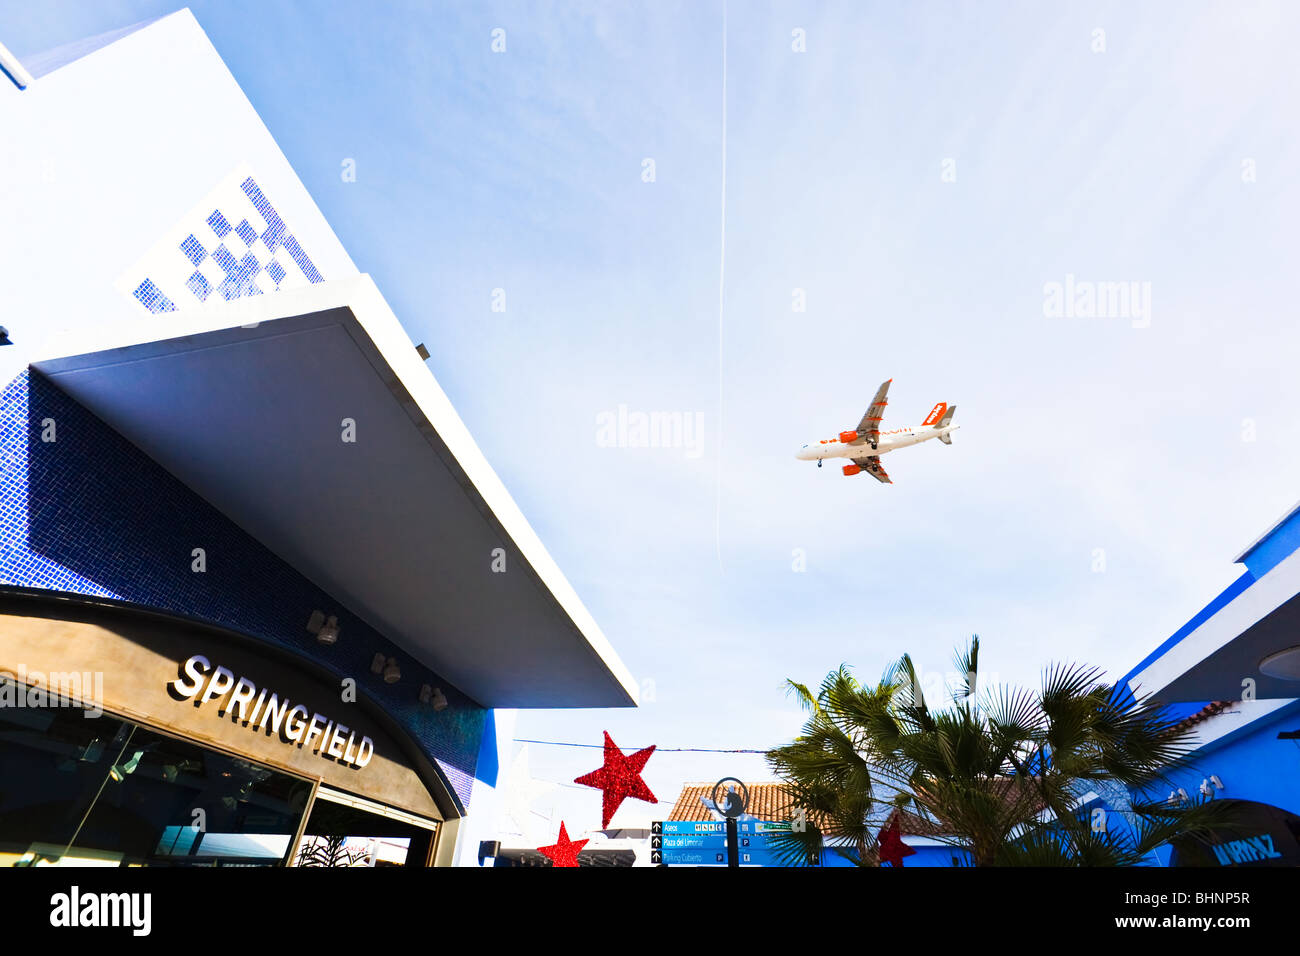 Vol d'un avion EasyJet plus de centre commercial Plaza Mayor, Malaga, Costa del Sol, Espagne. Boutique Springfield en premier plan. Banque D'Images